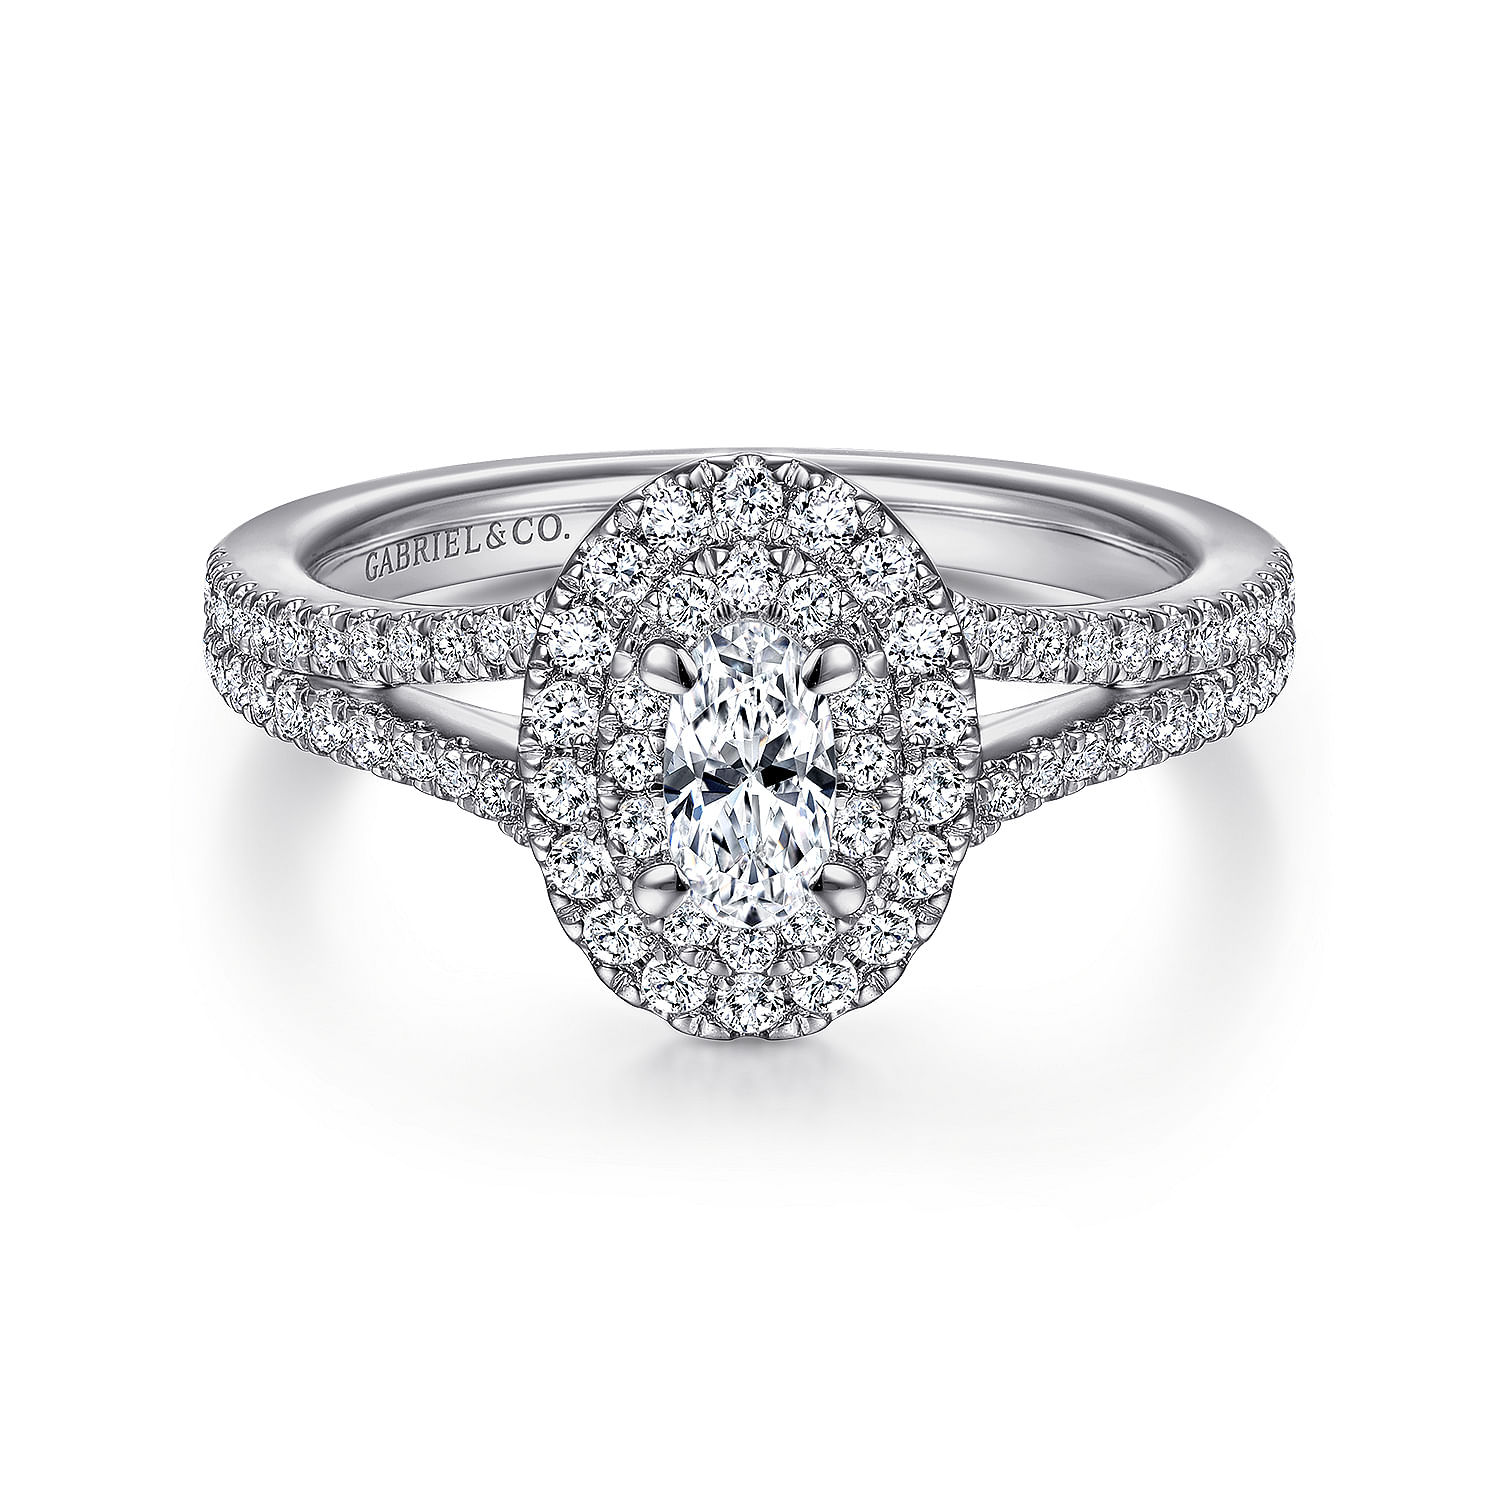 Bette---14K-White-Gold-Oval-Diamond-Engagement-Ring1